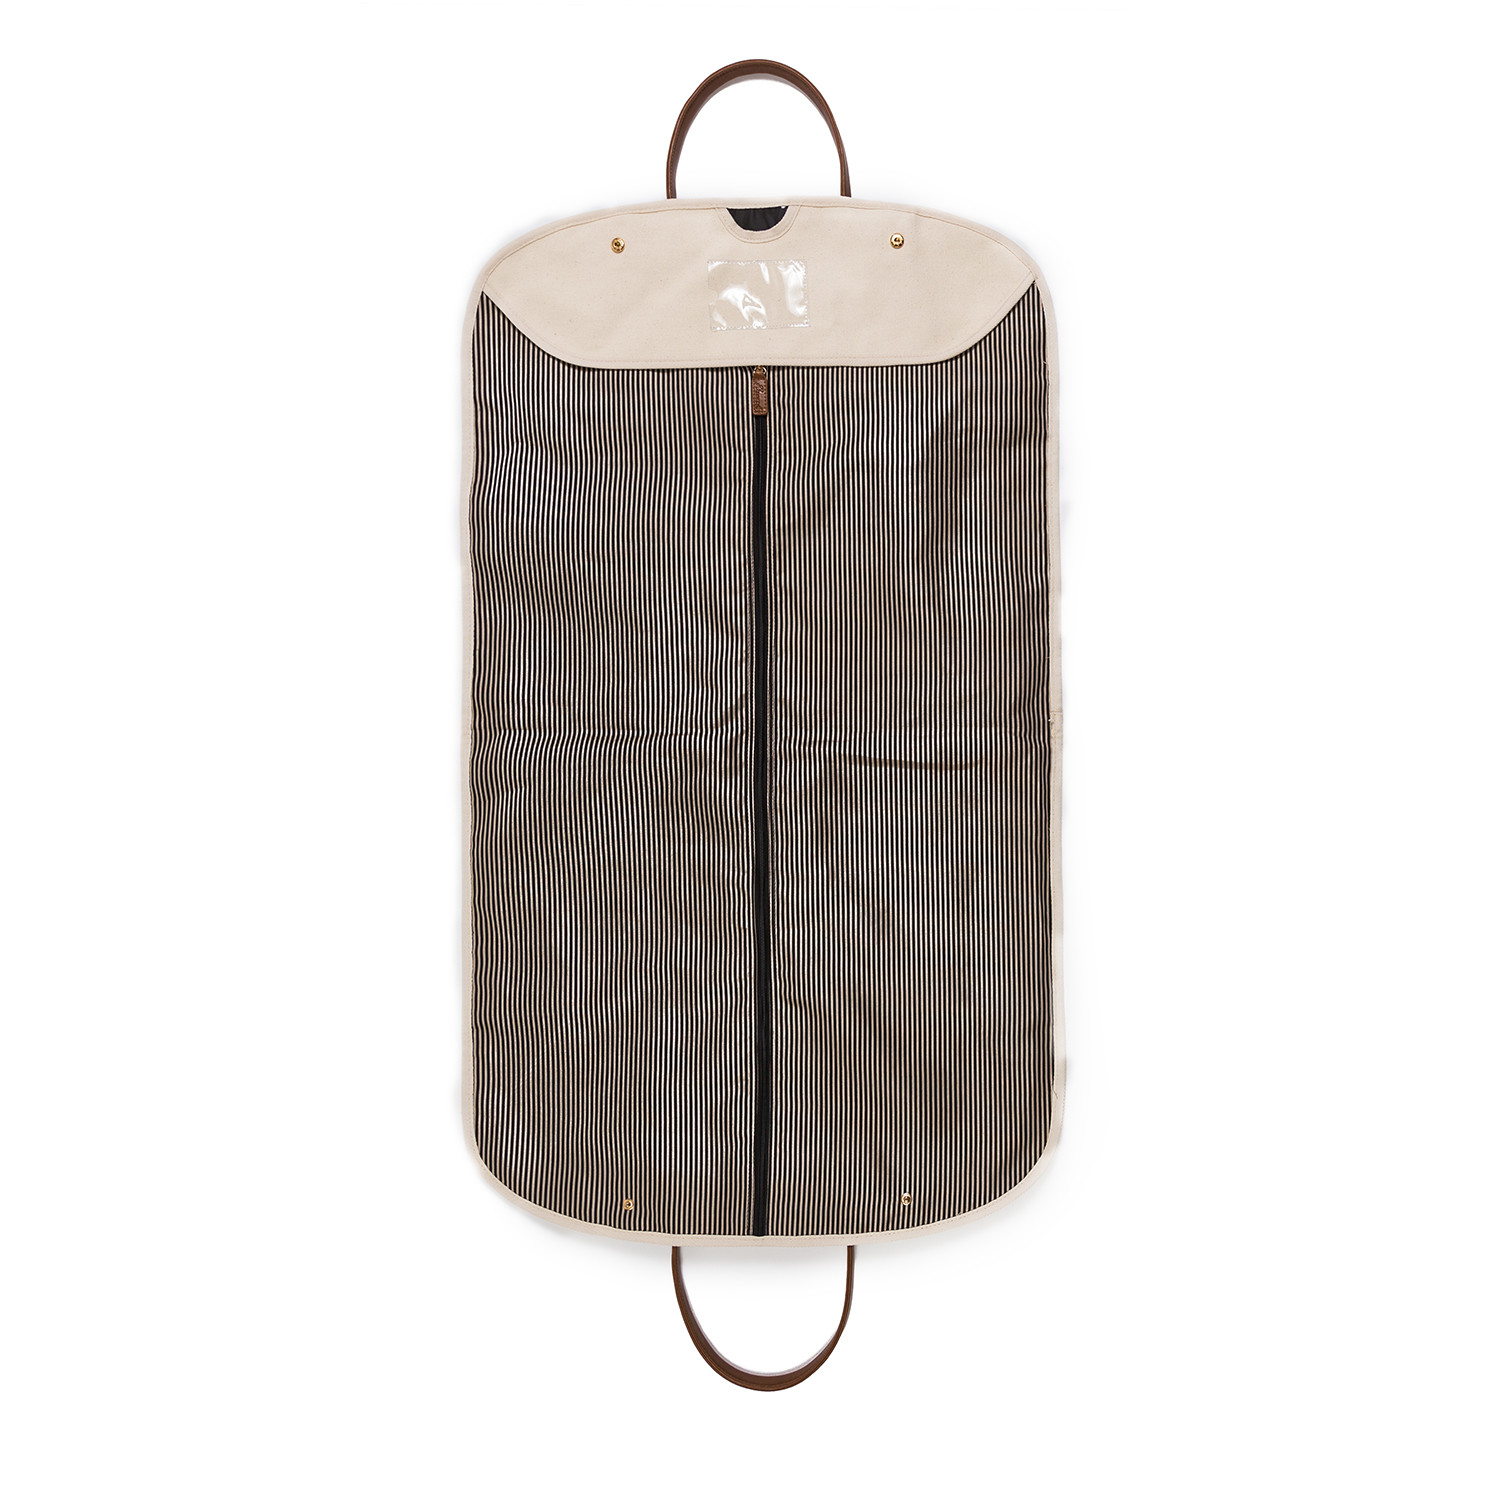 The Premium Original Garment Bag – Brouk & Co